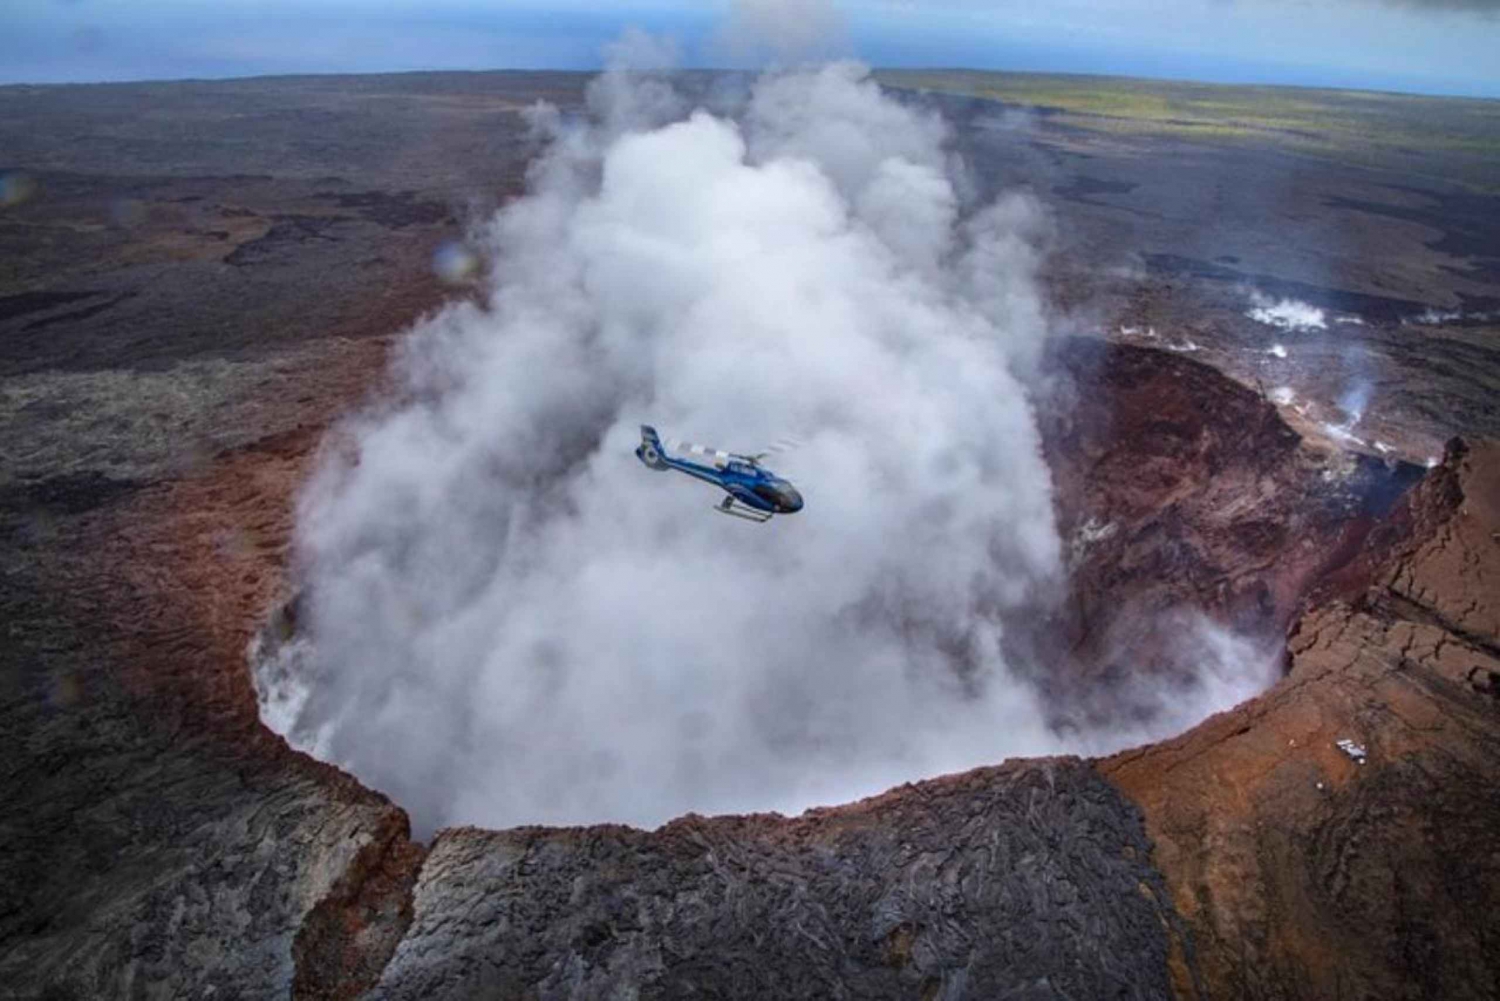 Maui para a Ilha Grande: Excursão de ônibus e helicóptero para o vulcão da Ilha Grande